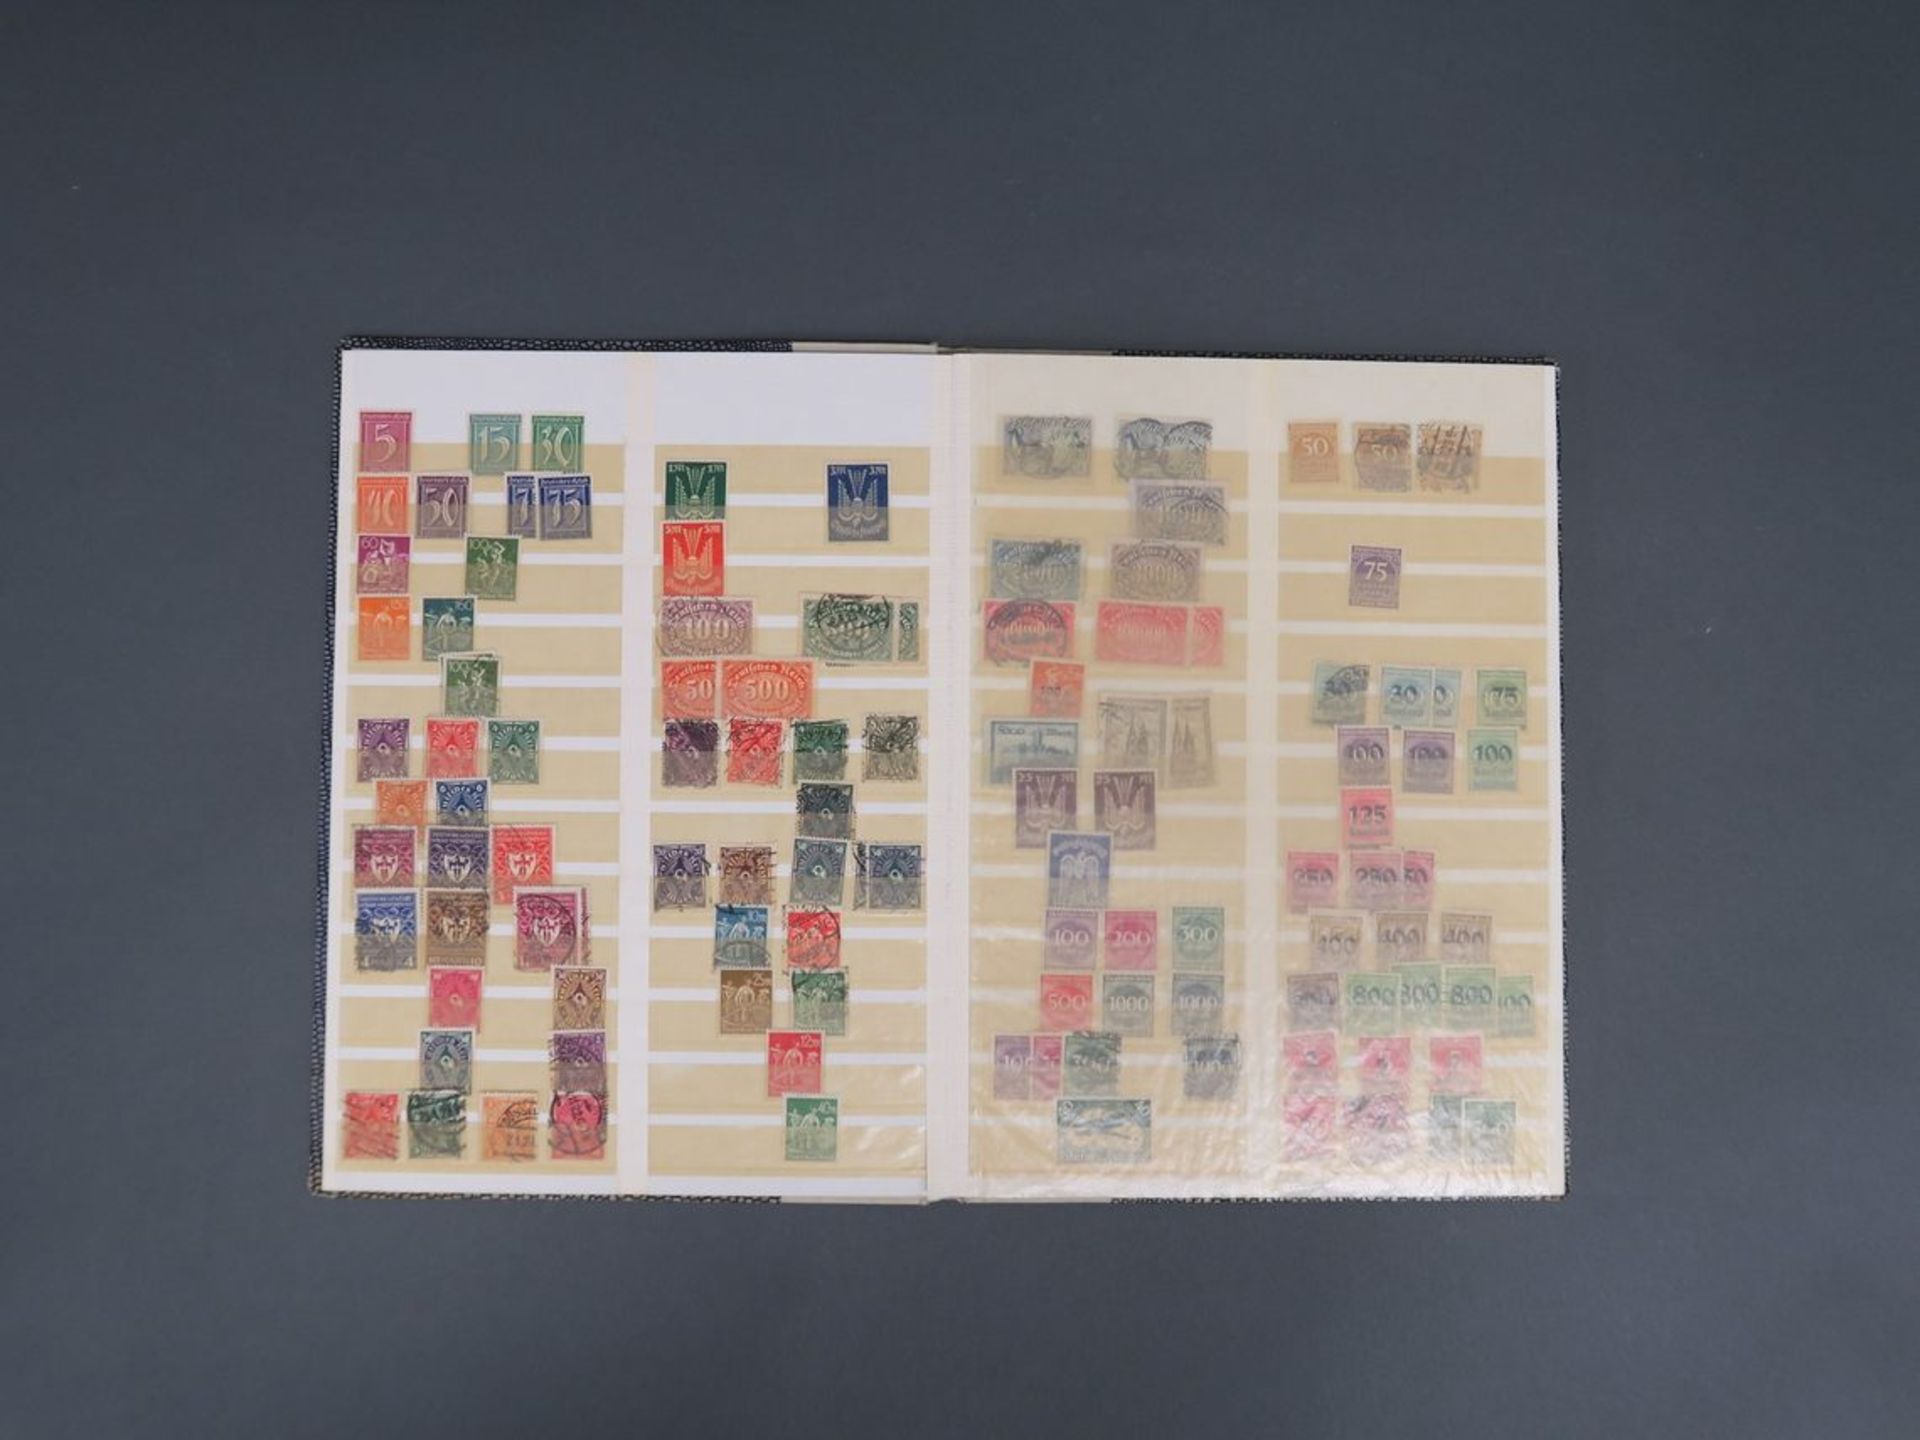 Elf diverse BriefmarkenalbenAlle Welt. Ab ca. 1900 bis 2. Hälfte 20. Jh. Mit einer Auswahl von